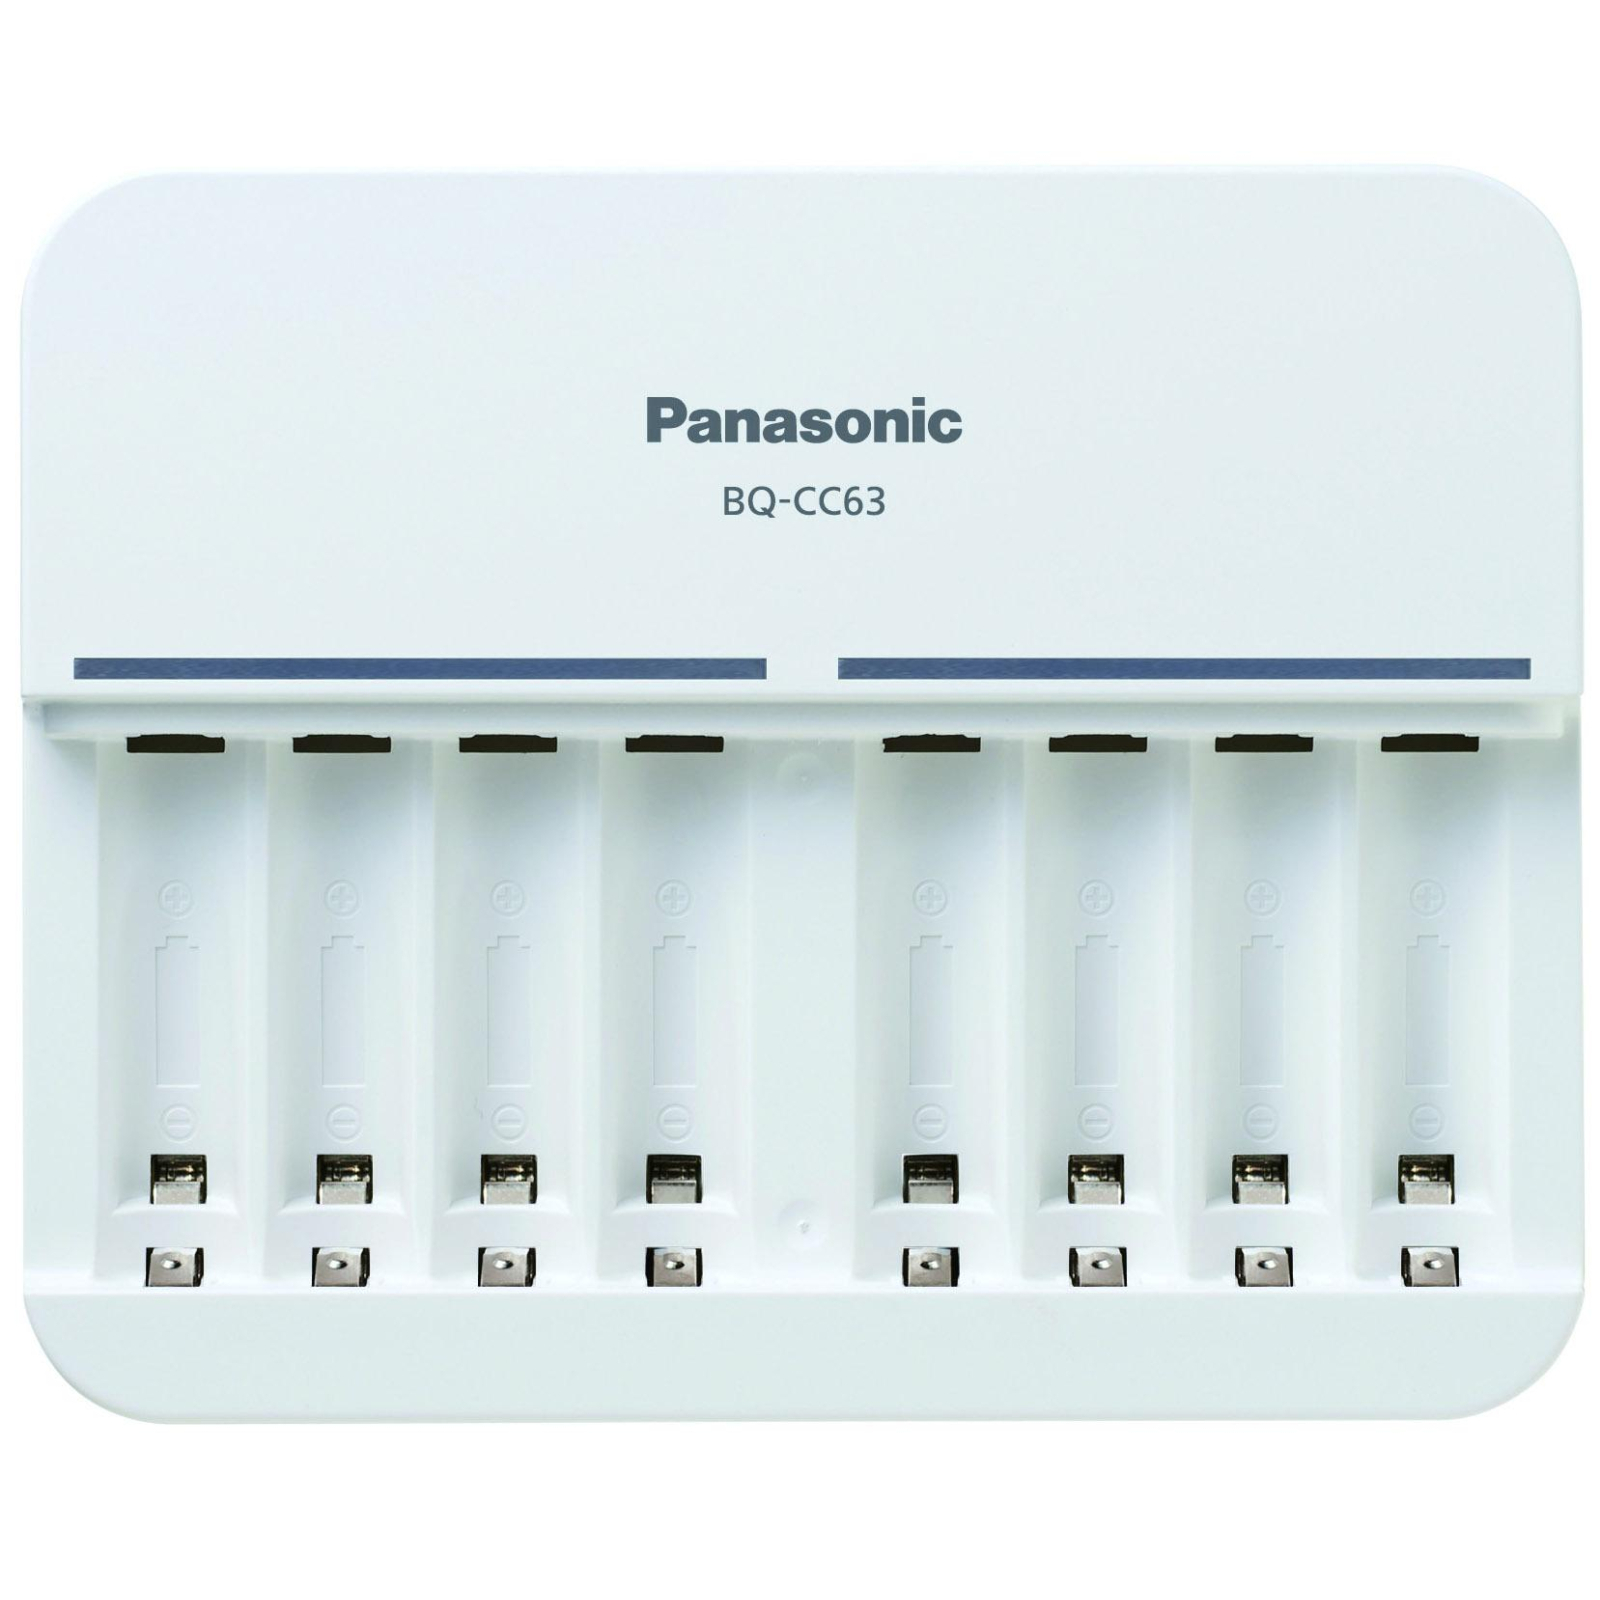 Зарядний пристрій для акумуляторів Panasonic Advanced Charger 8 cell (BQ-CC63E) зображення 2